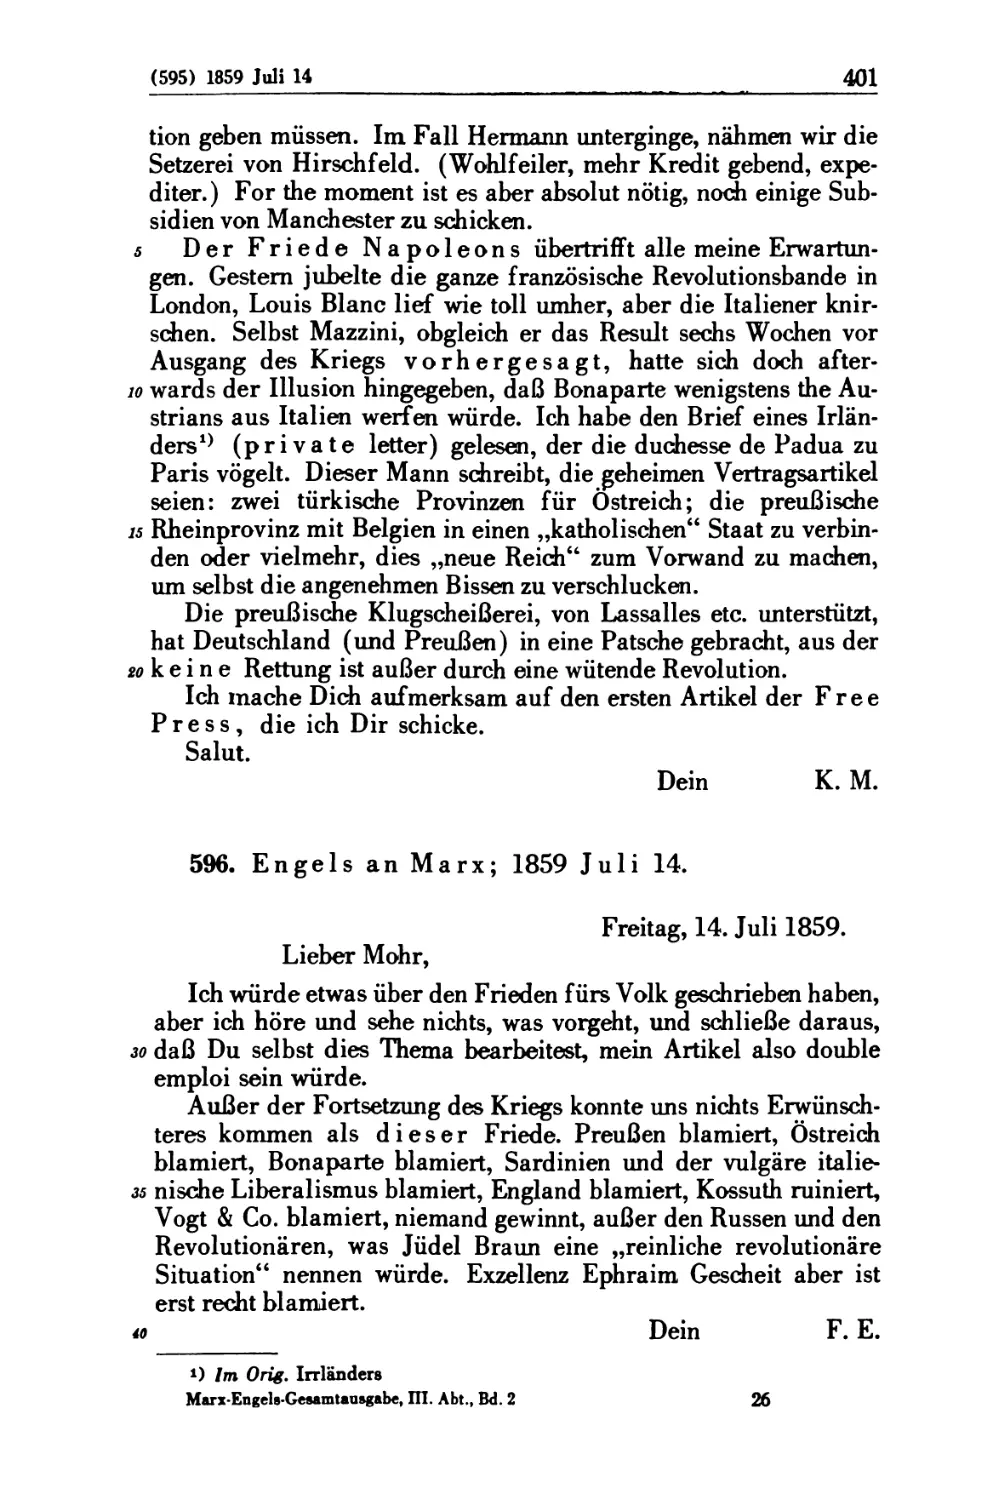 596. Engels an Marx; 1859 Juli 14